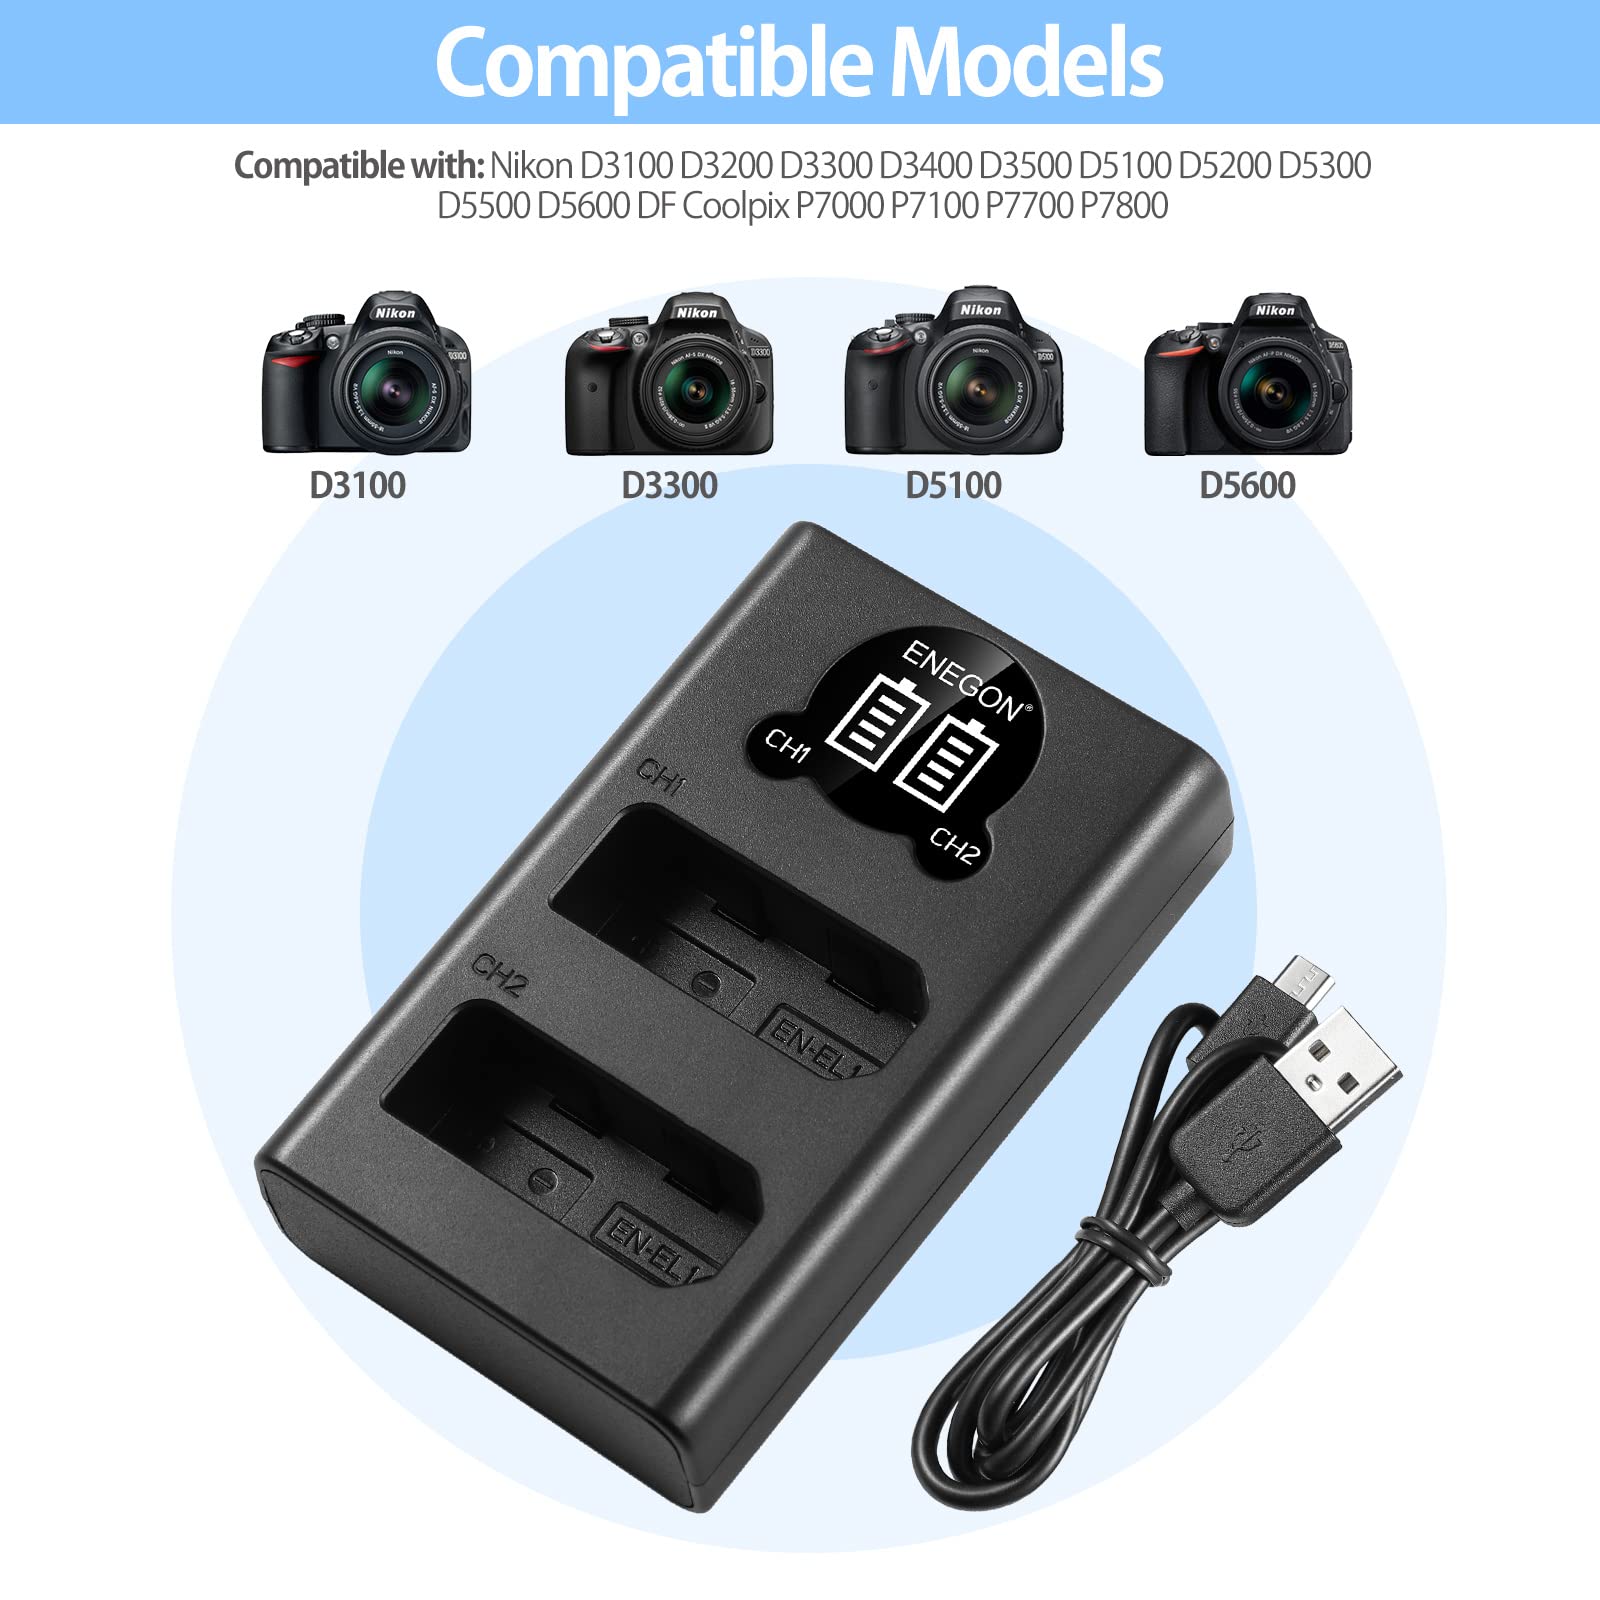 ENEGON EN-EL14 EL14a LCD USB Charger Compatible with Nikon D3100, D3200, D3300, D3400, D3500, D5100, D5200, D5300, D5500 Coolpix P7000 P7100 P7700 P7800 Cameras